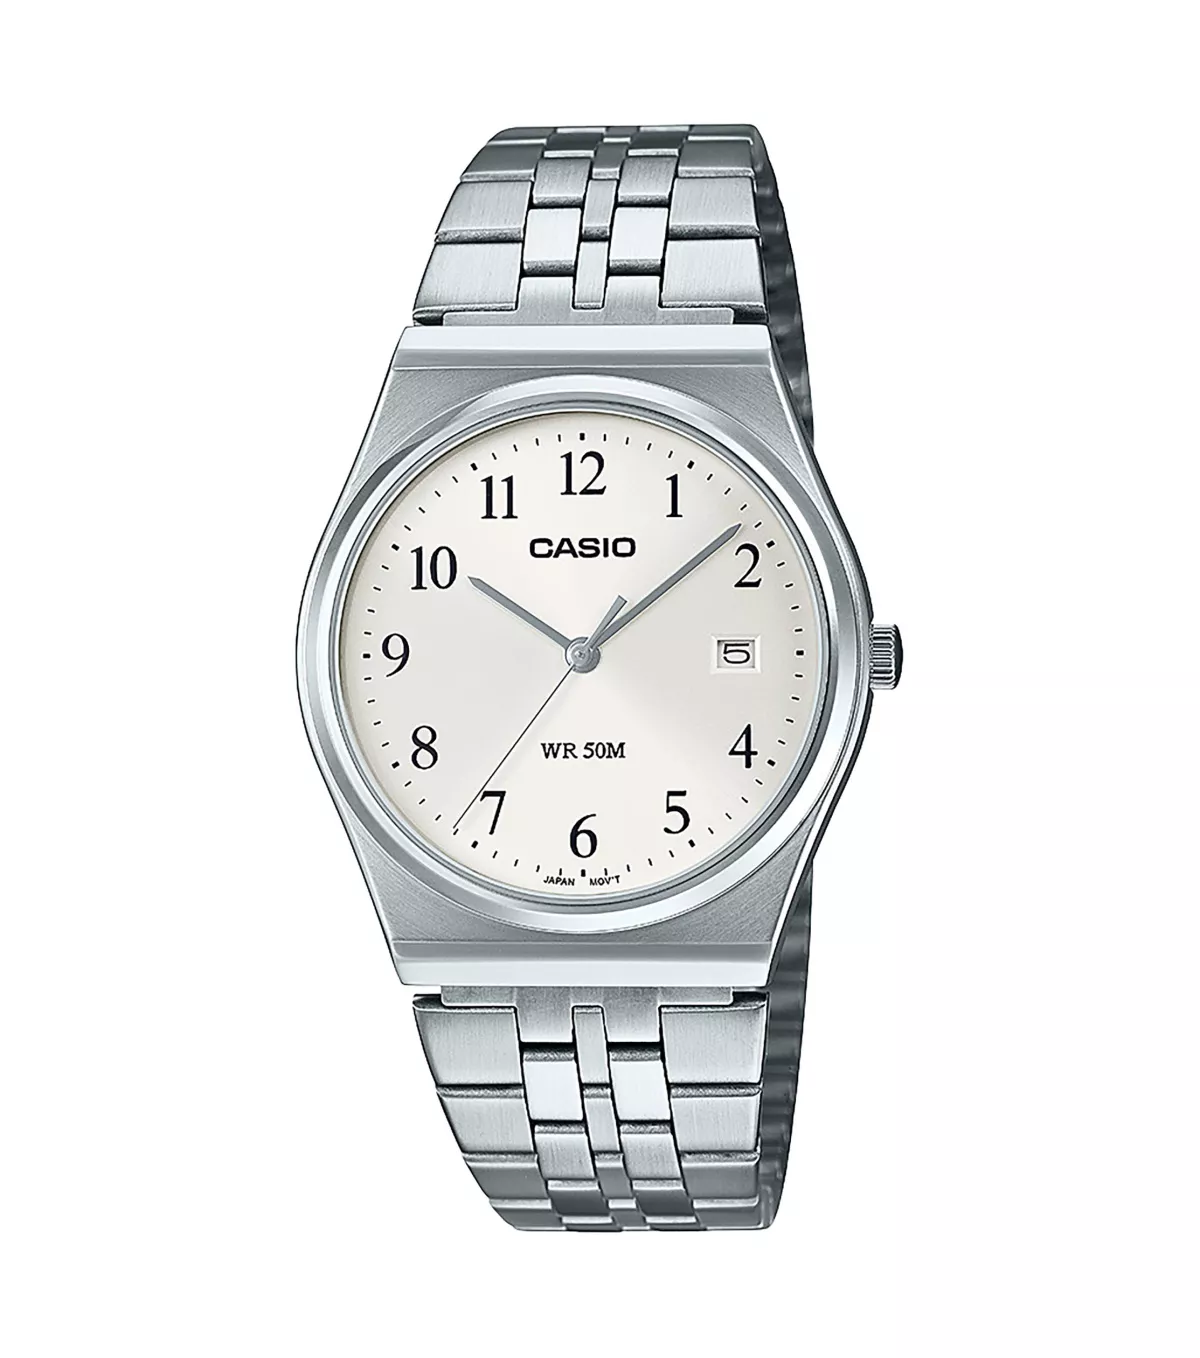 CASIO MTP-B145D-7BVEF Uhr, Casio Collection, Silber